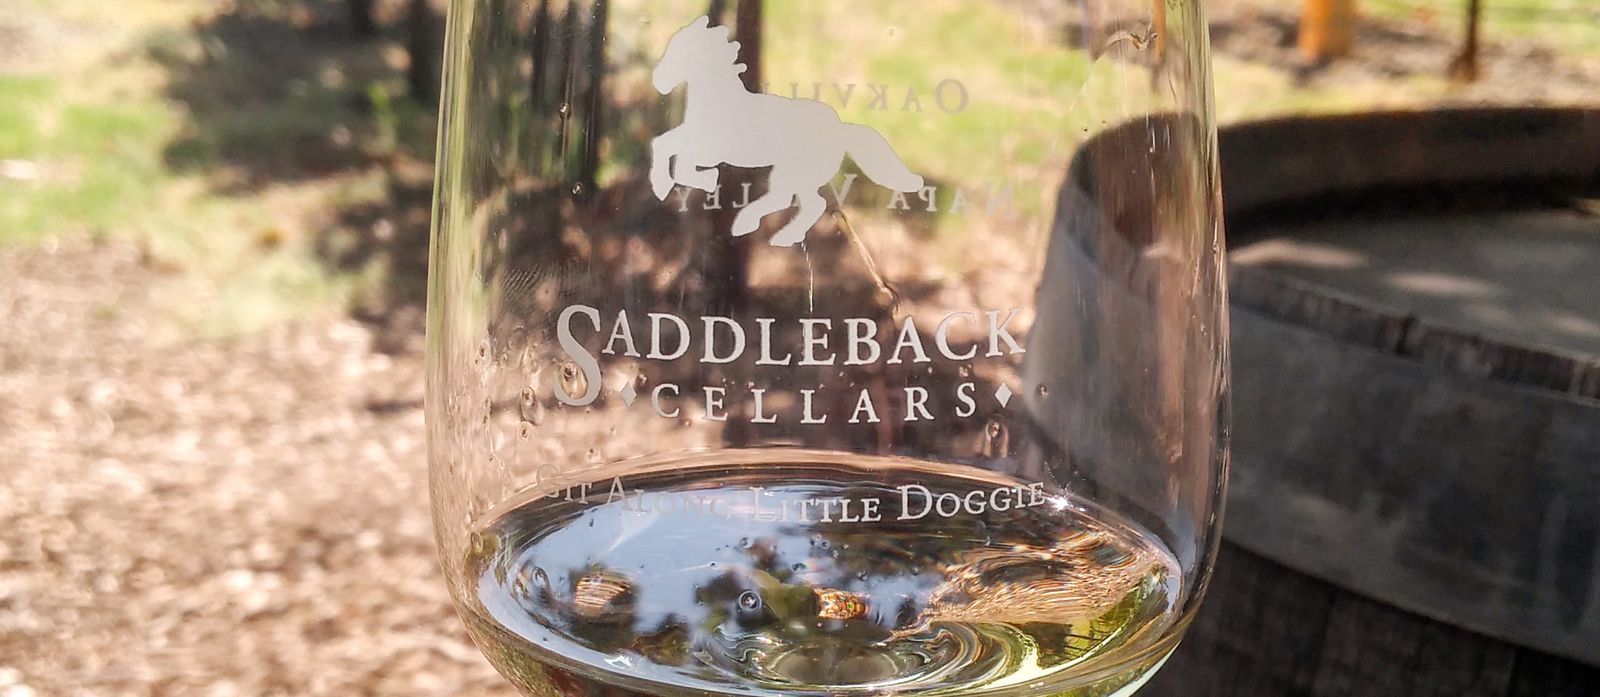 Weinprobe im Saddleback Cellars Weingut im Napa Valley, Kalifornien